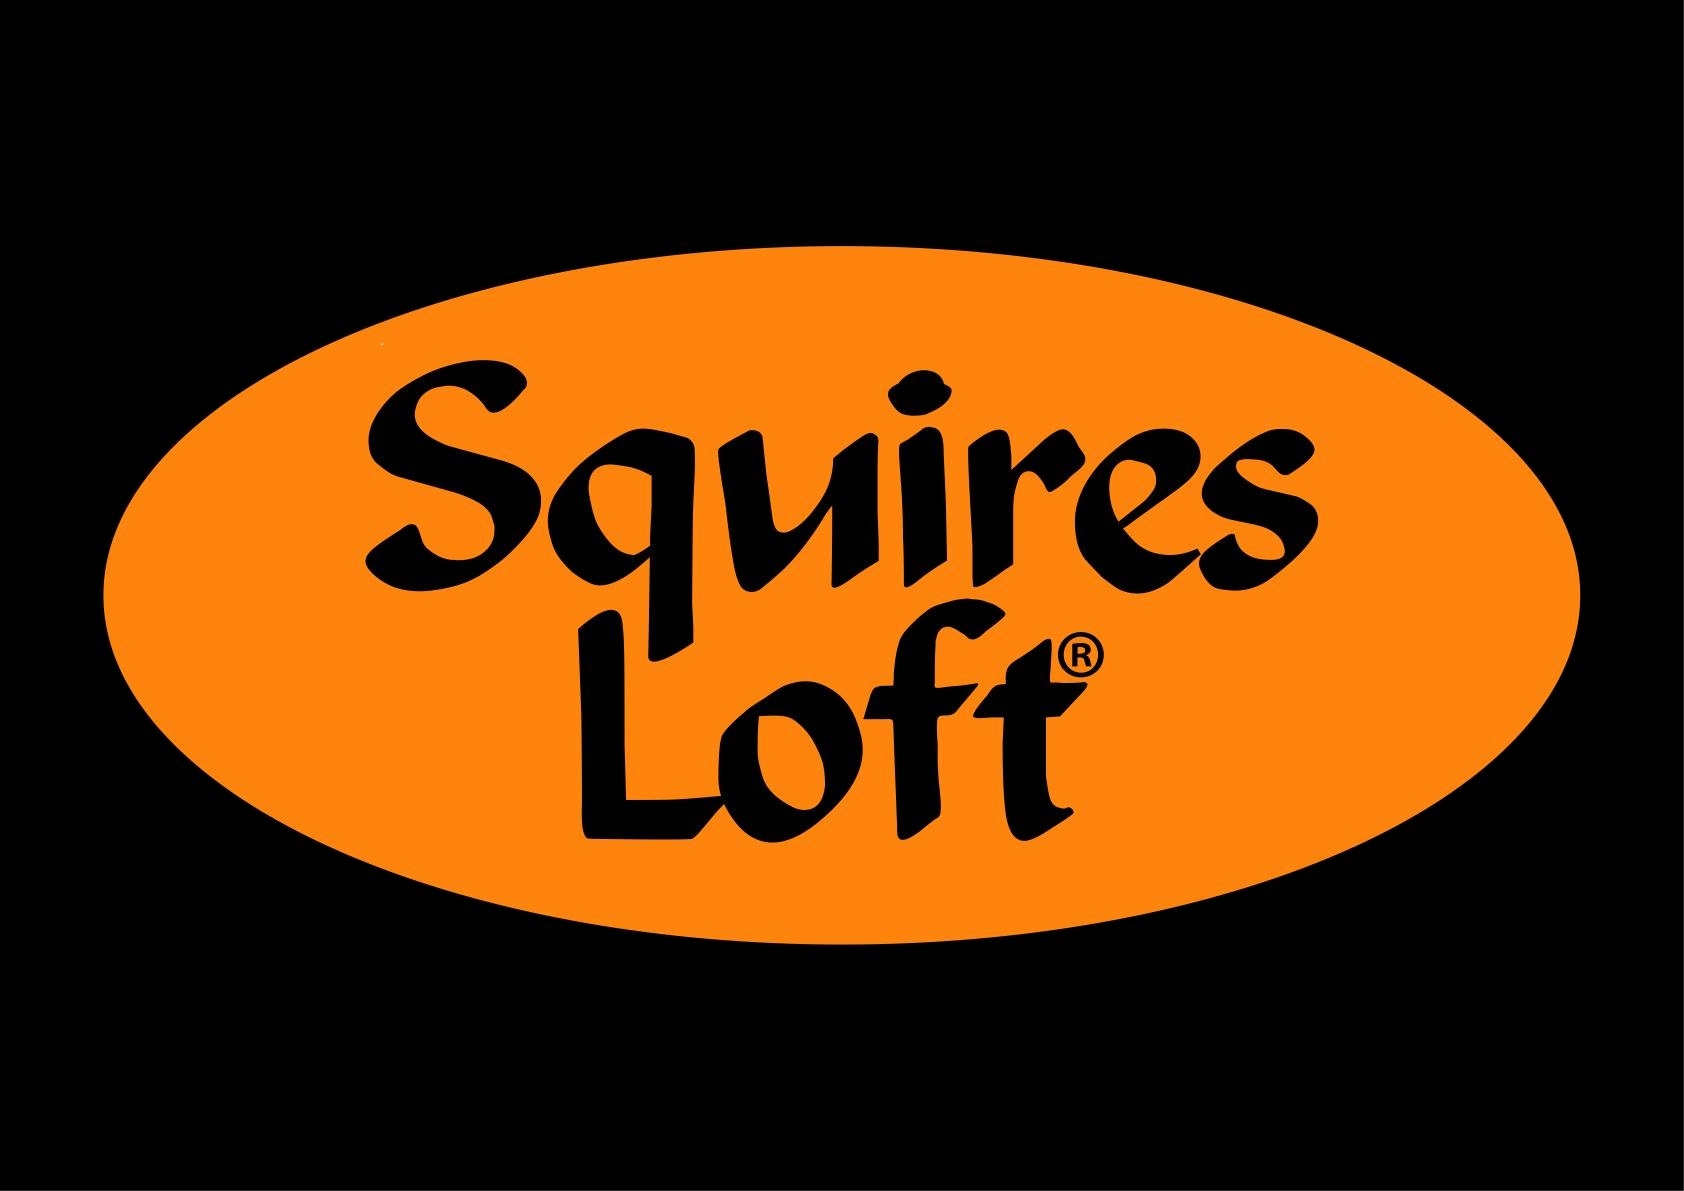 Squires Loft 